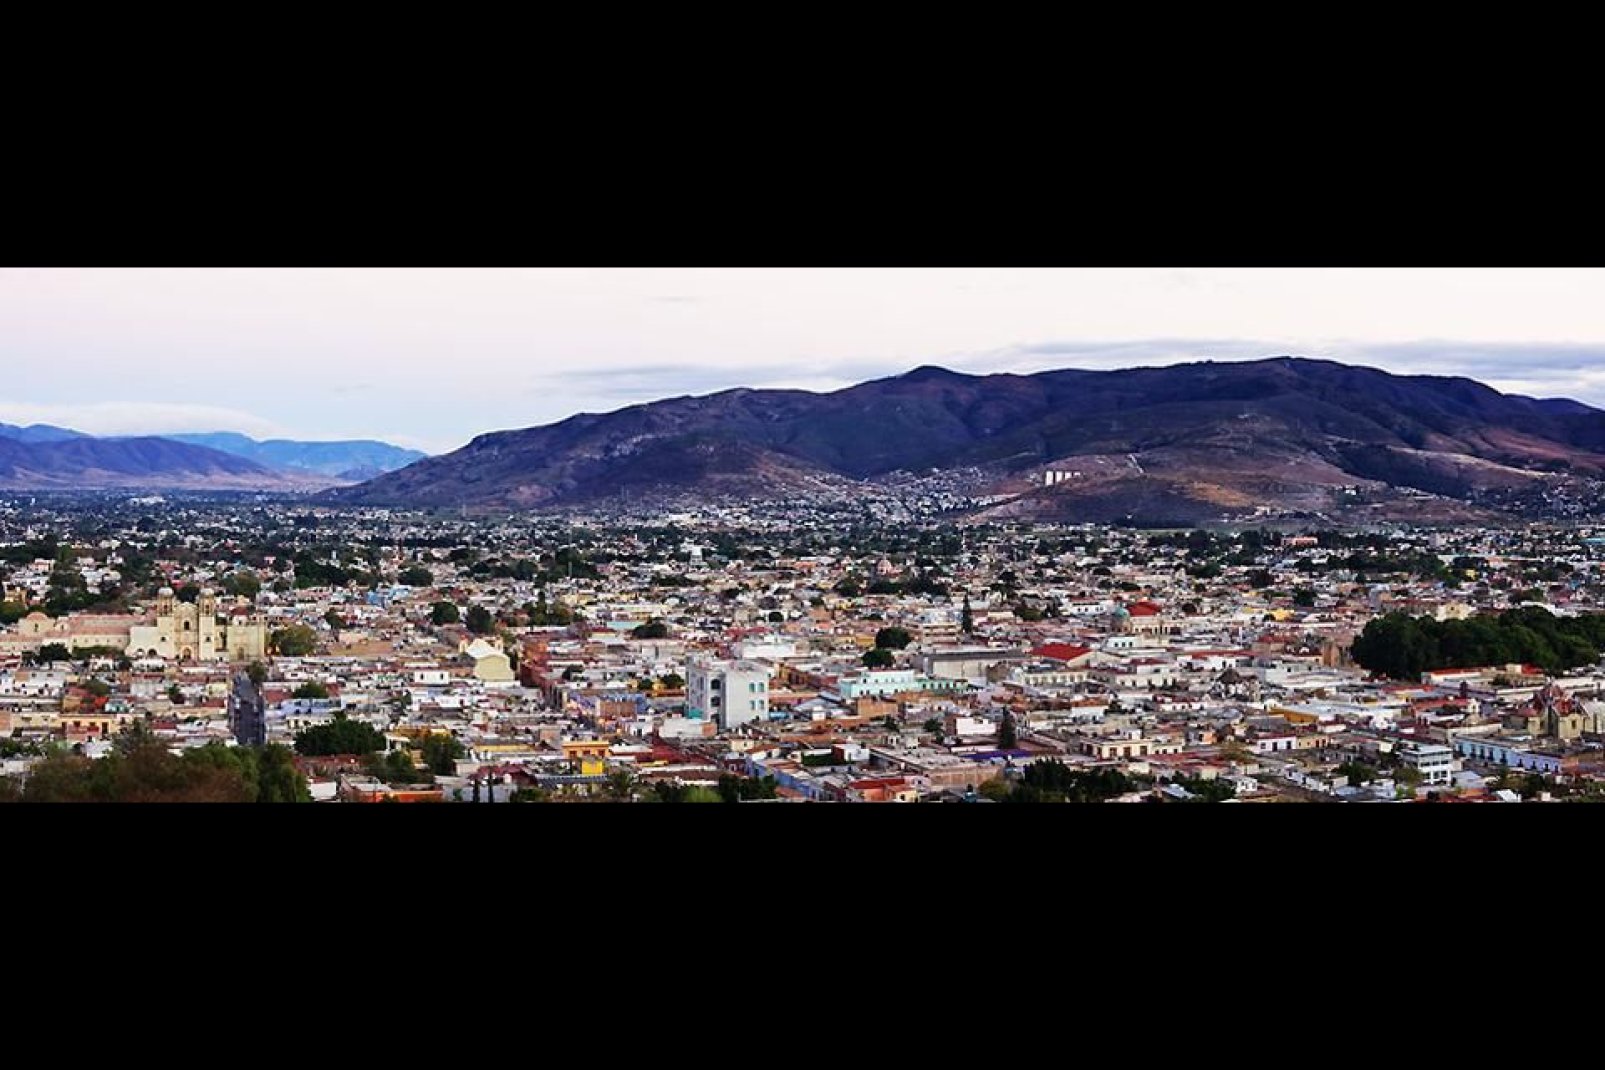 Cette ville se situe dans la Sierra Madre au sud et culmine à 1550m d'altitude.